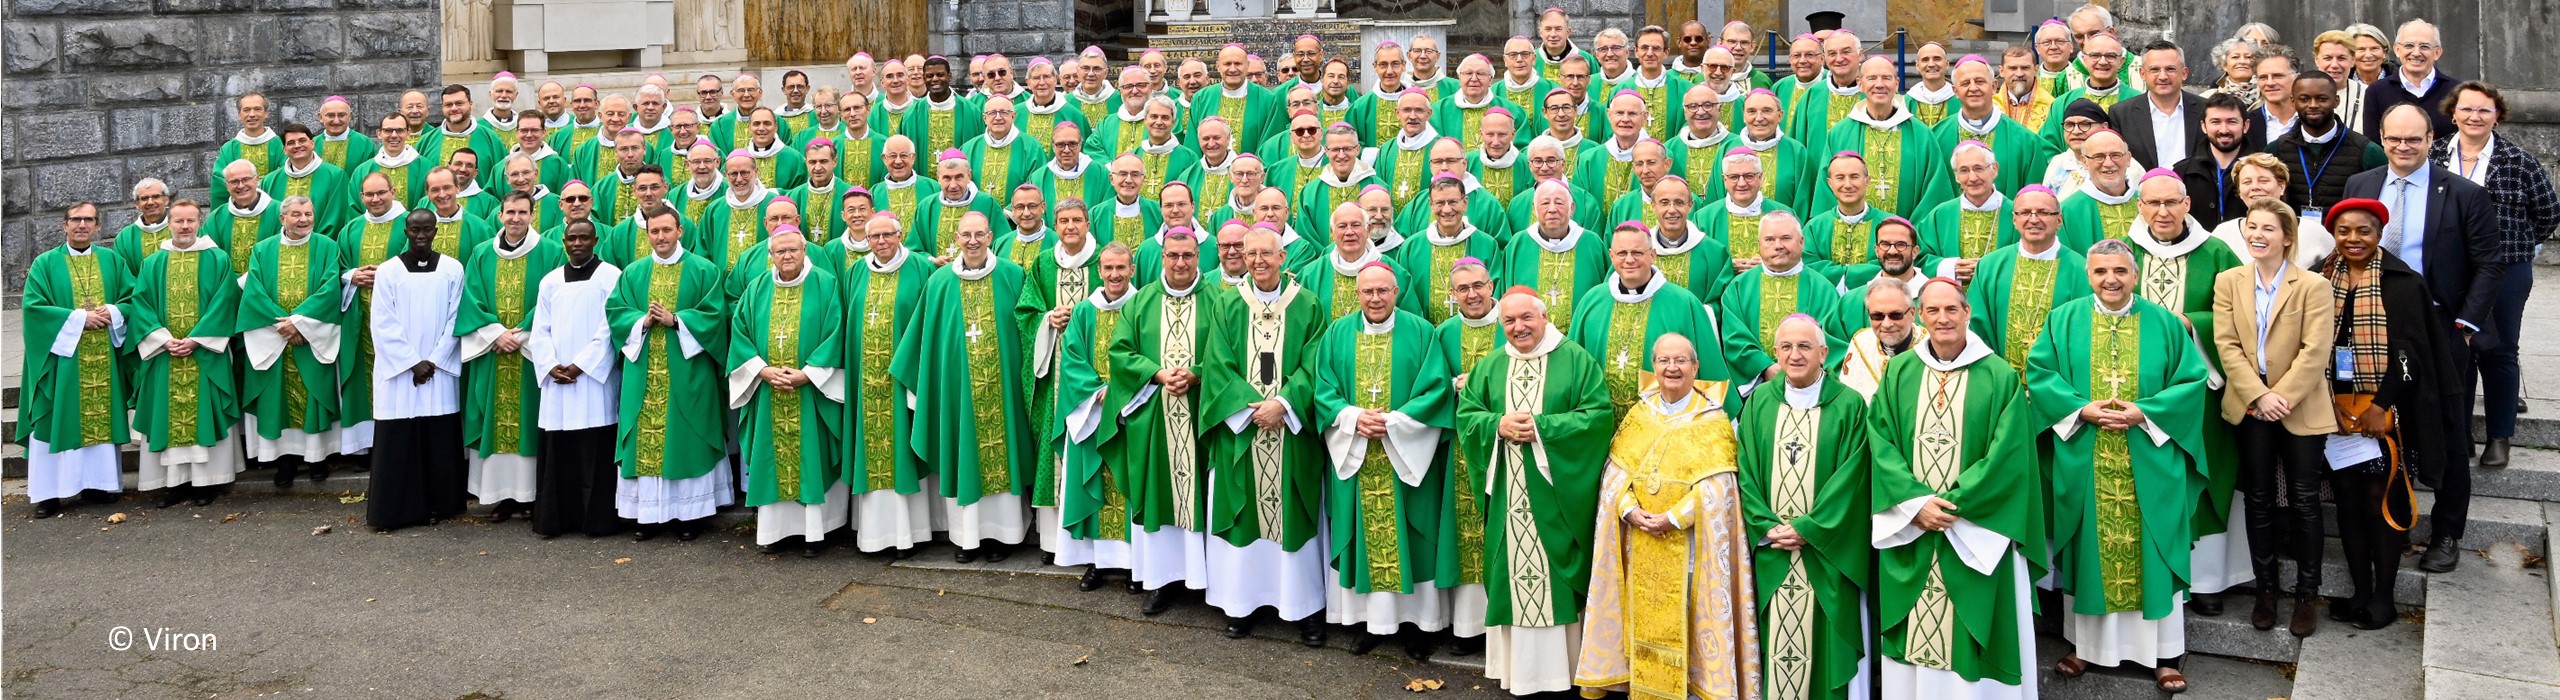 Retour sur l'Assemblée plénière des évêques de France à Lourdes